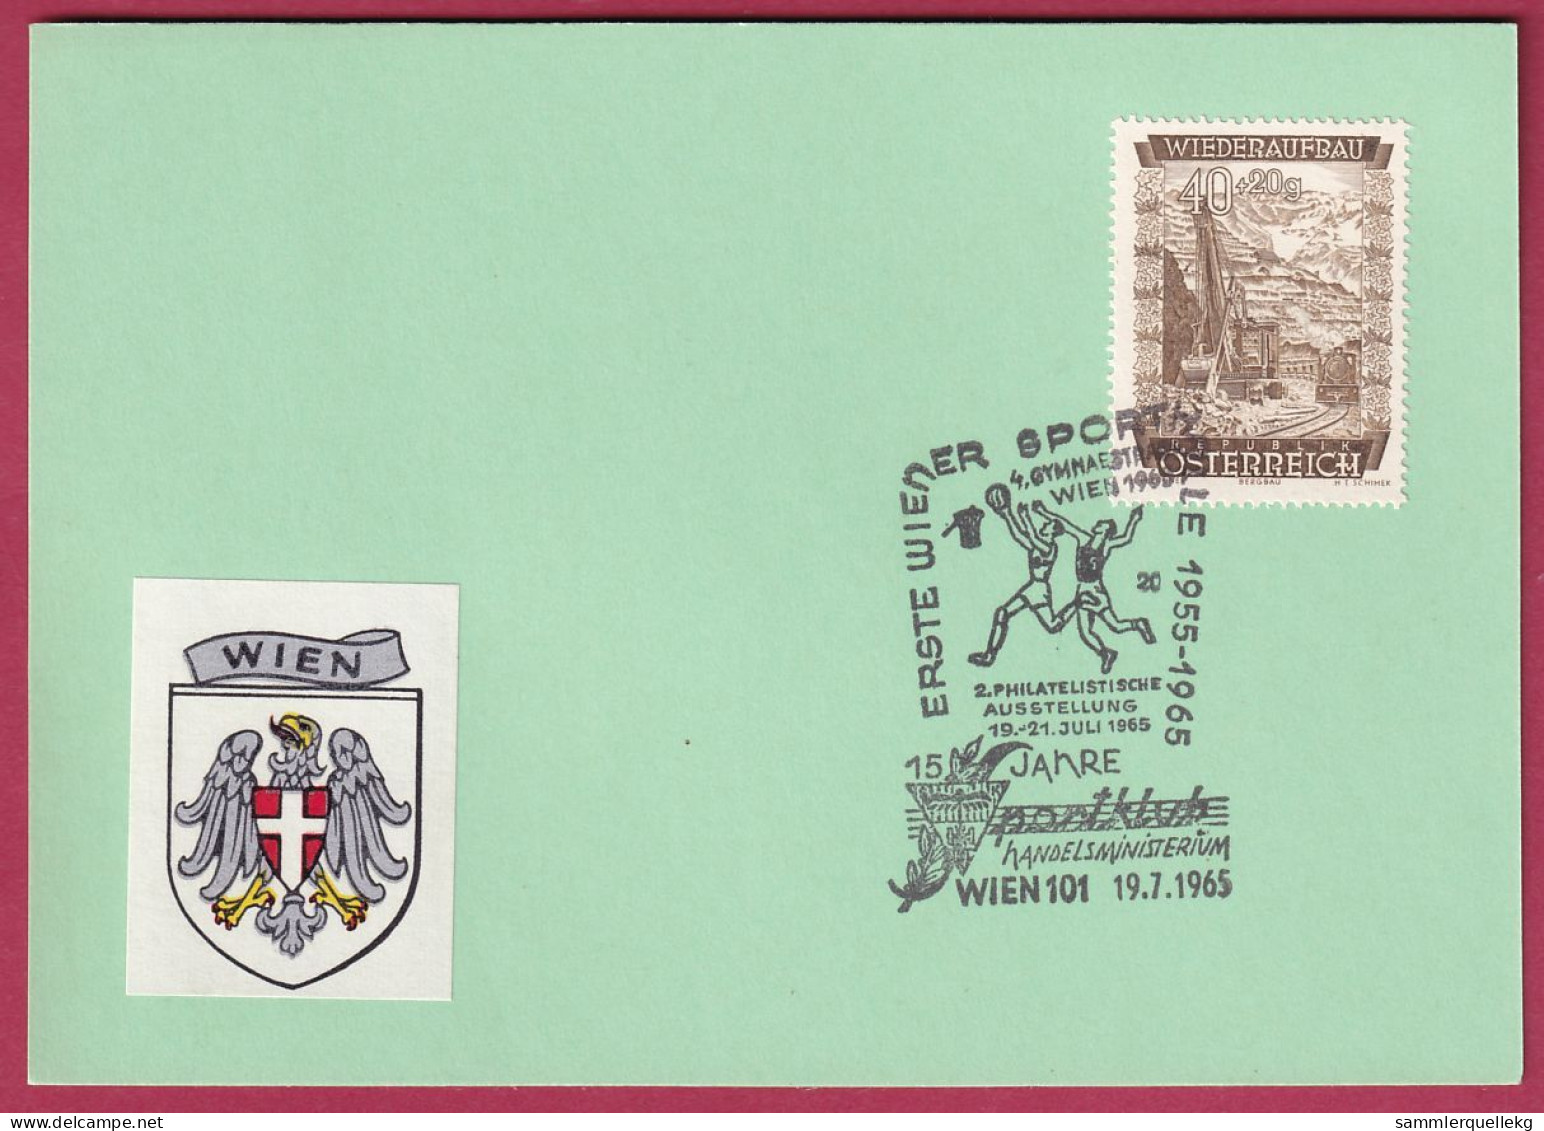 Österreich MNr. 861 Sonderstempel 19. 7. 1966 15 Jahre Sportklub Handelministerium - Covers & Documents